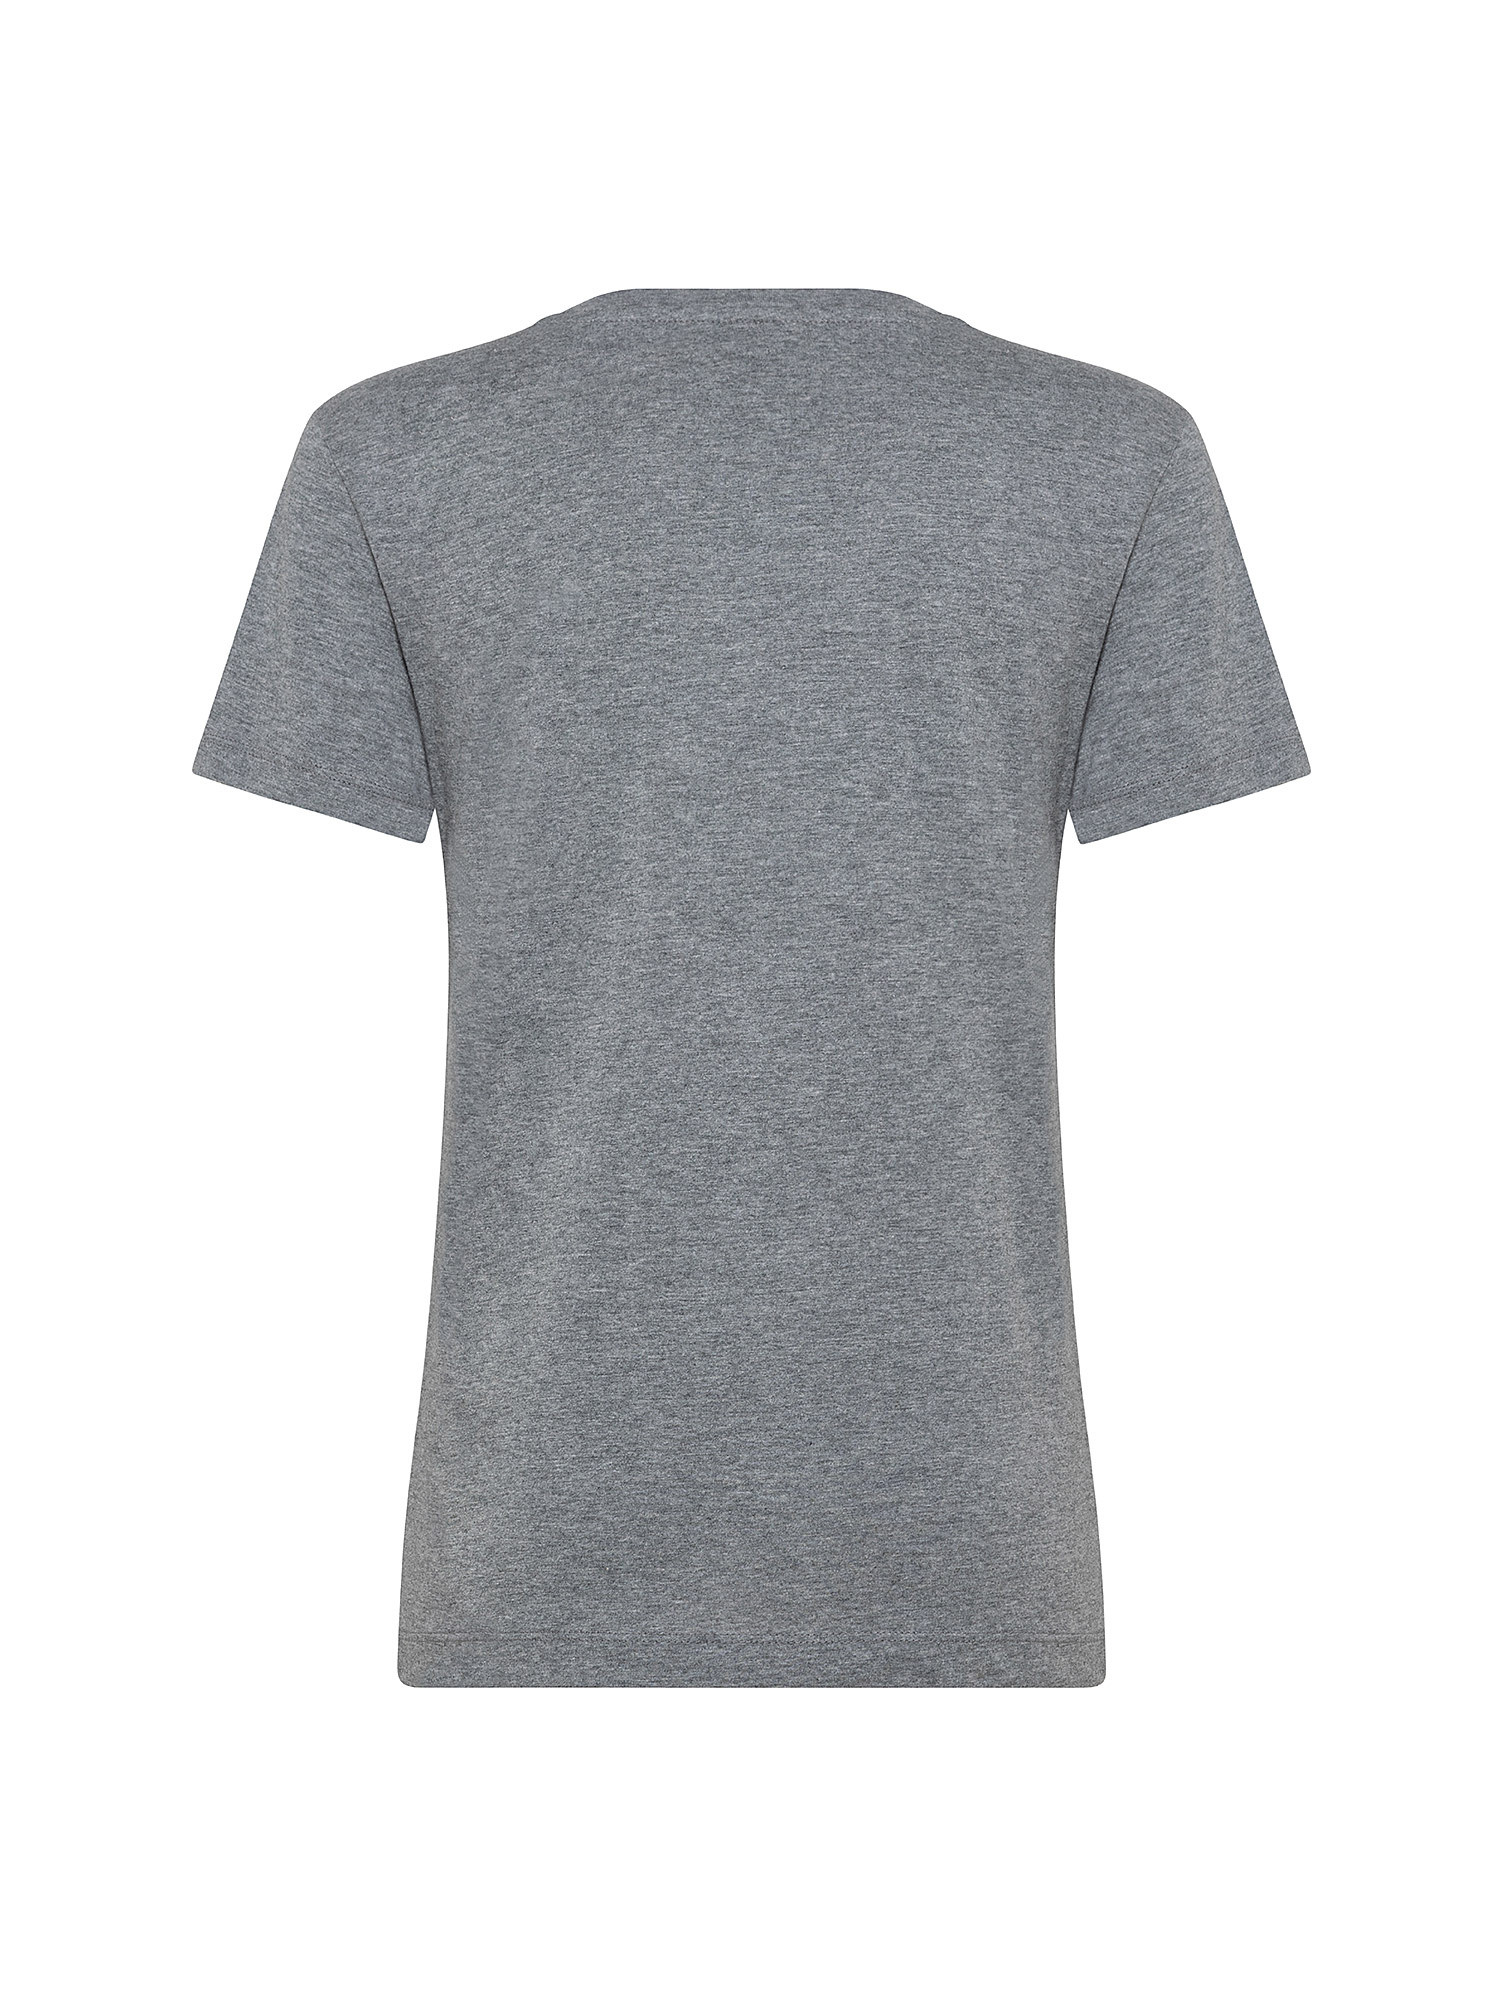 T-Shirt con logo di perline, Grigio, large image number 1